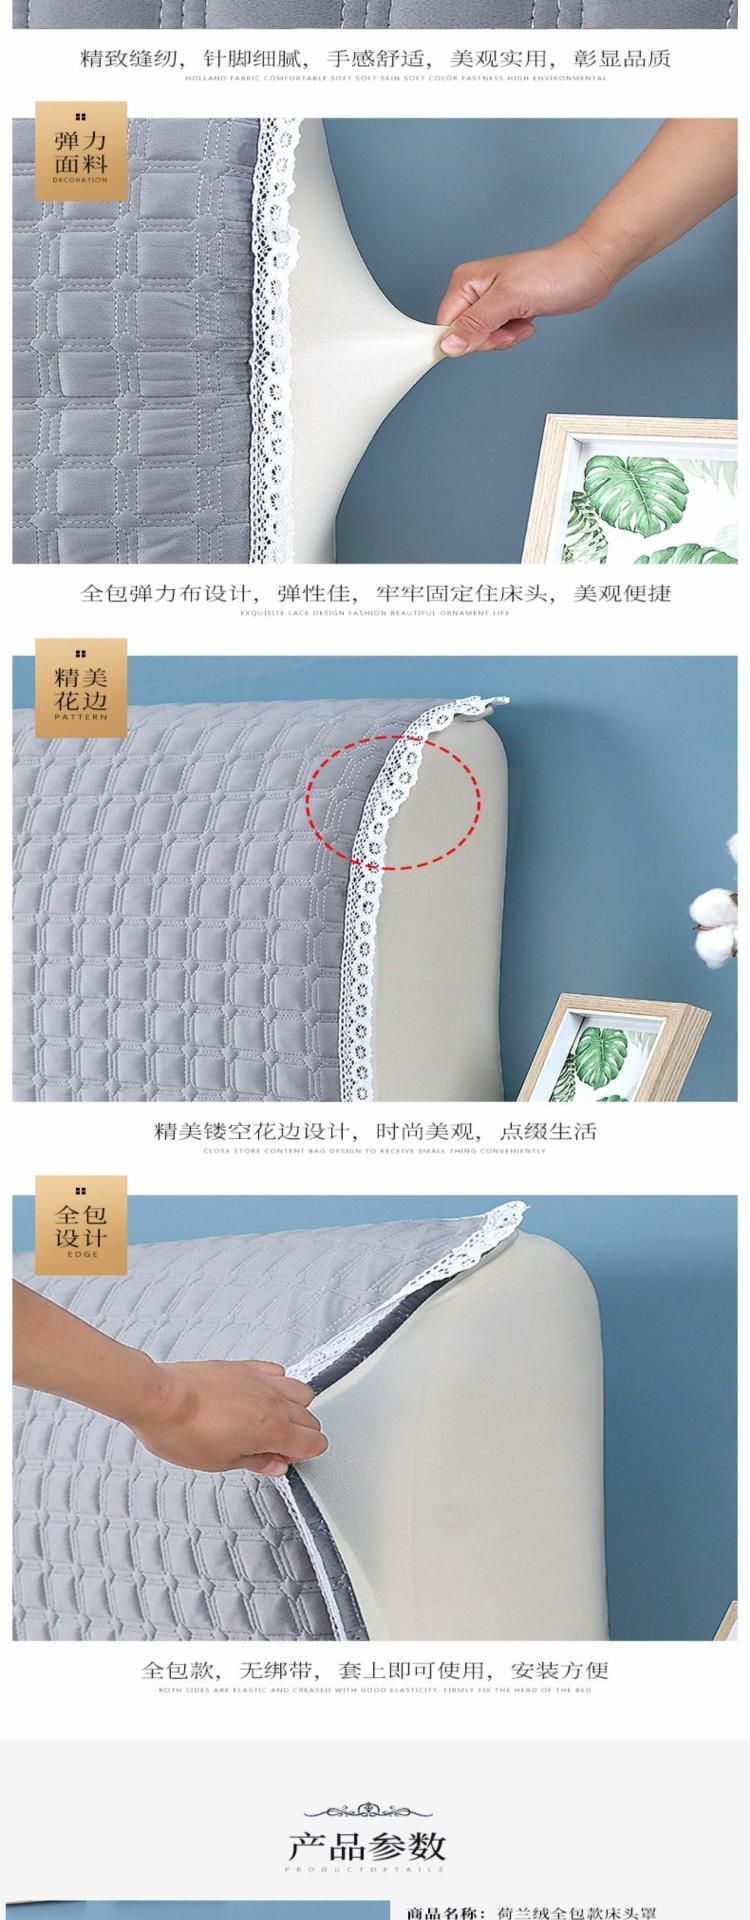 Bộ trải giường phong cách Châu Âu đơn giản hiện đại bao gồm tất cả các loại vải trải giường 1,8m đàn hồi mềm che phủ bụi che phủ bảo vệ - Bảo vệ bụi